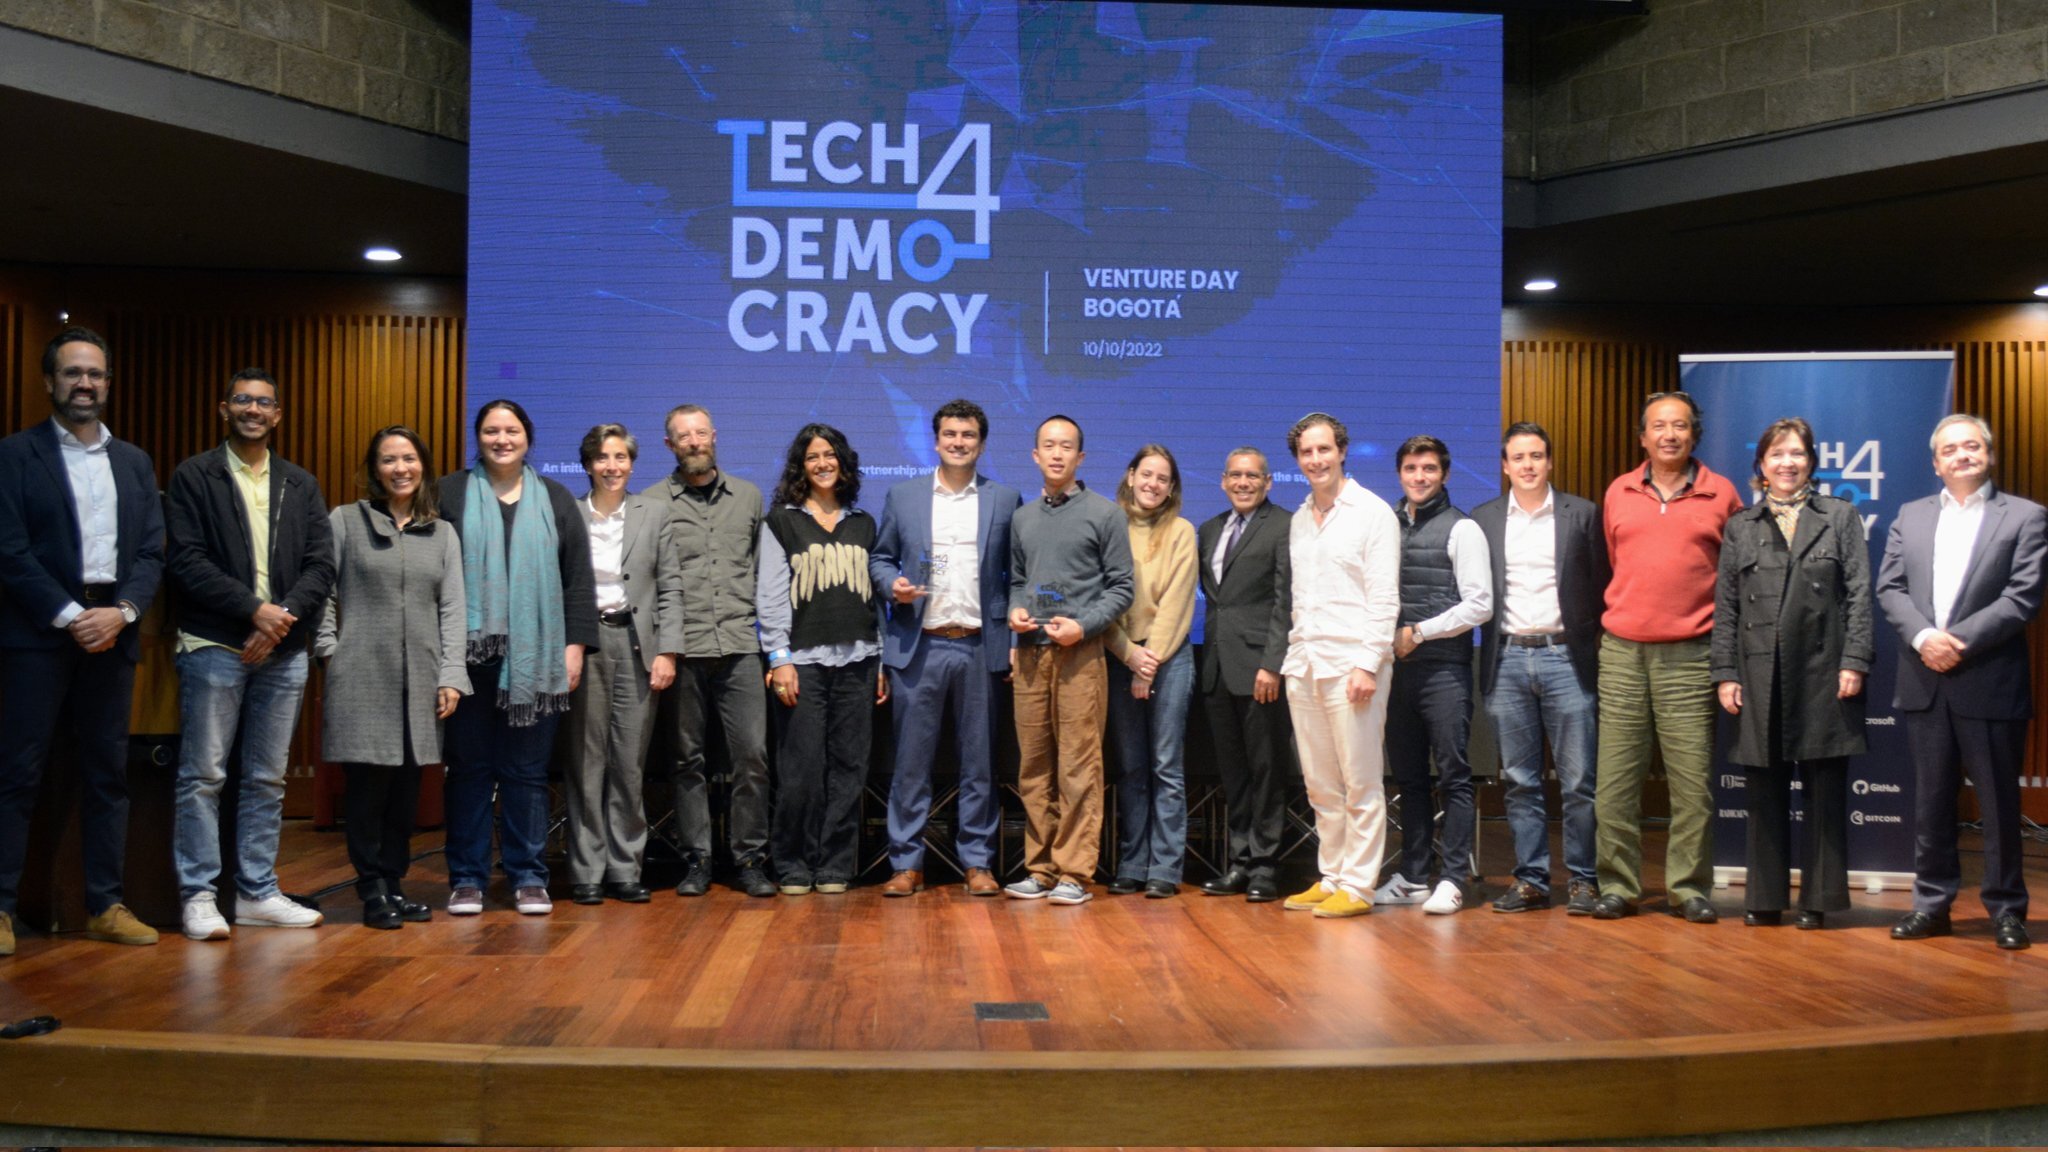 Mario Novoa, EVoting's Executive Director, at the Tech4Democracy award